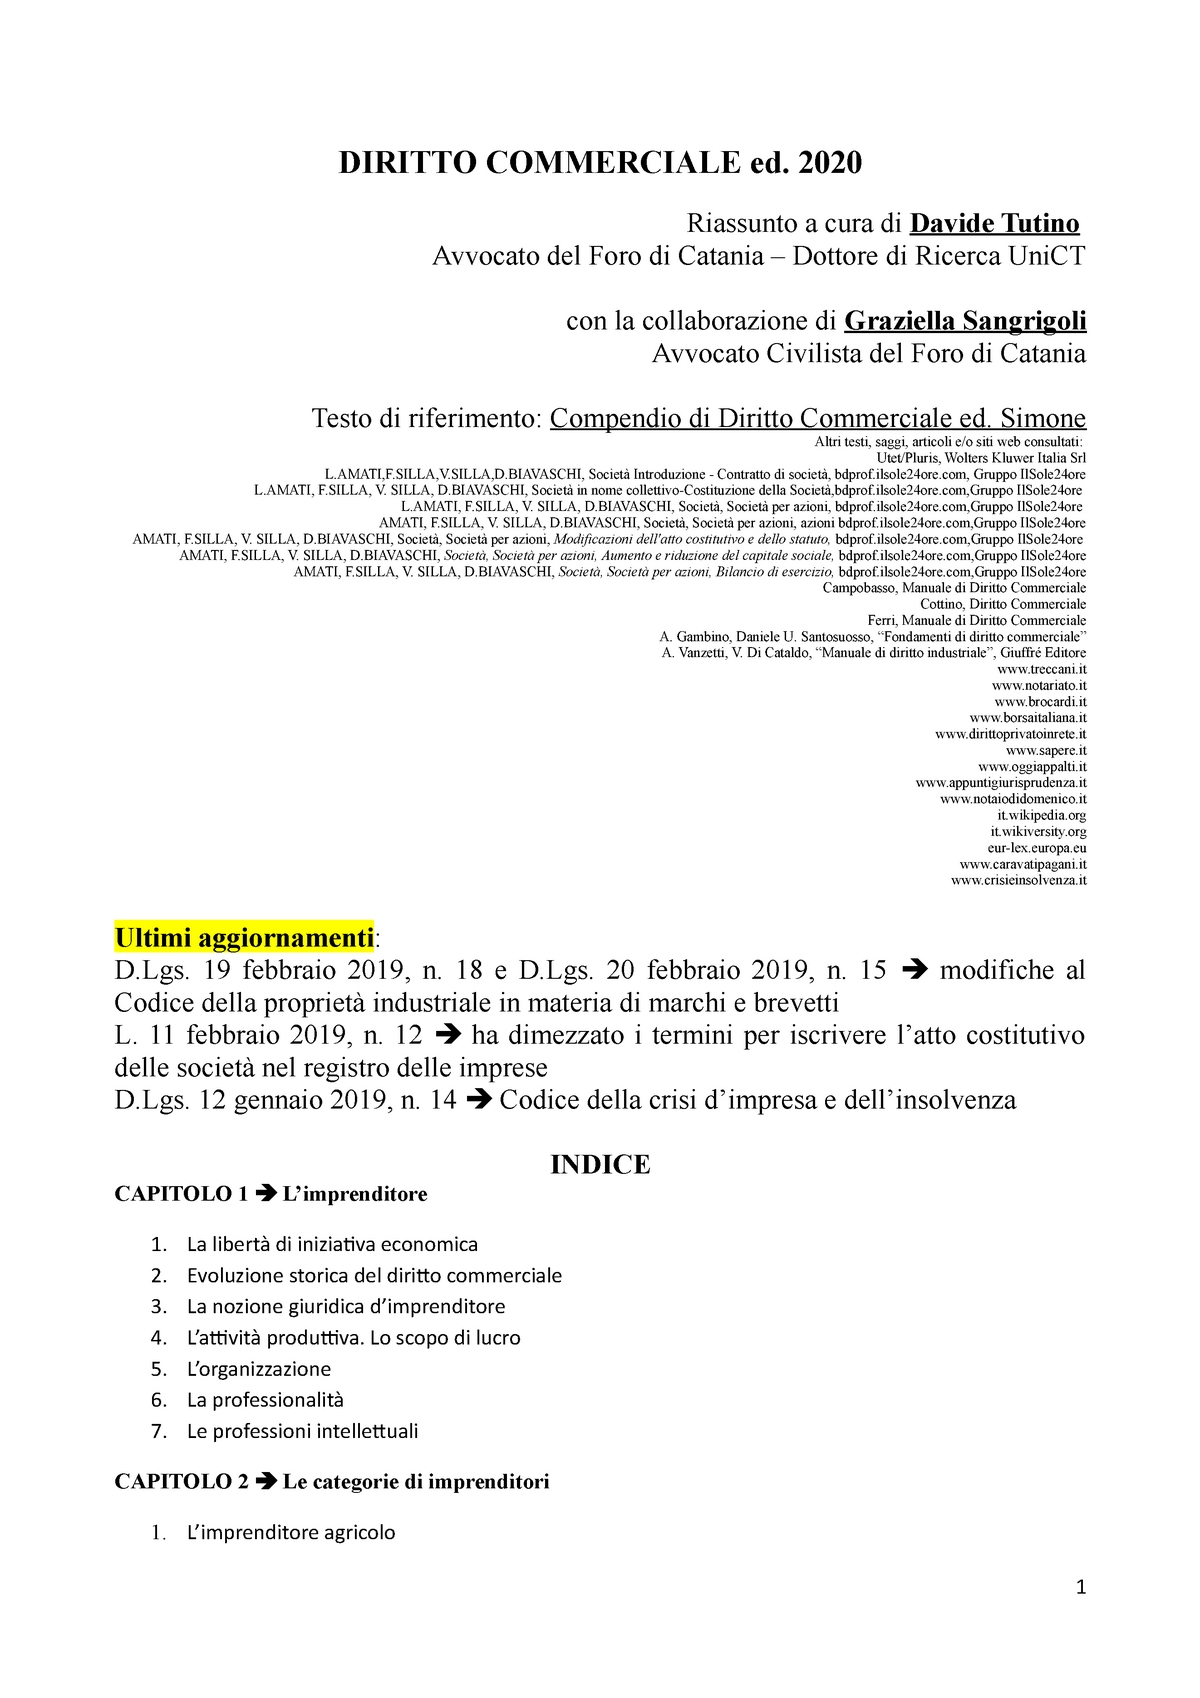 Diritto Commerciale, riassunto compendio Simone - DIRITTO COMMERCIALE ed.  2020 Riassunto a cura di - Studocu